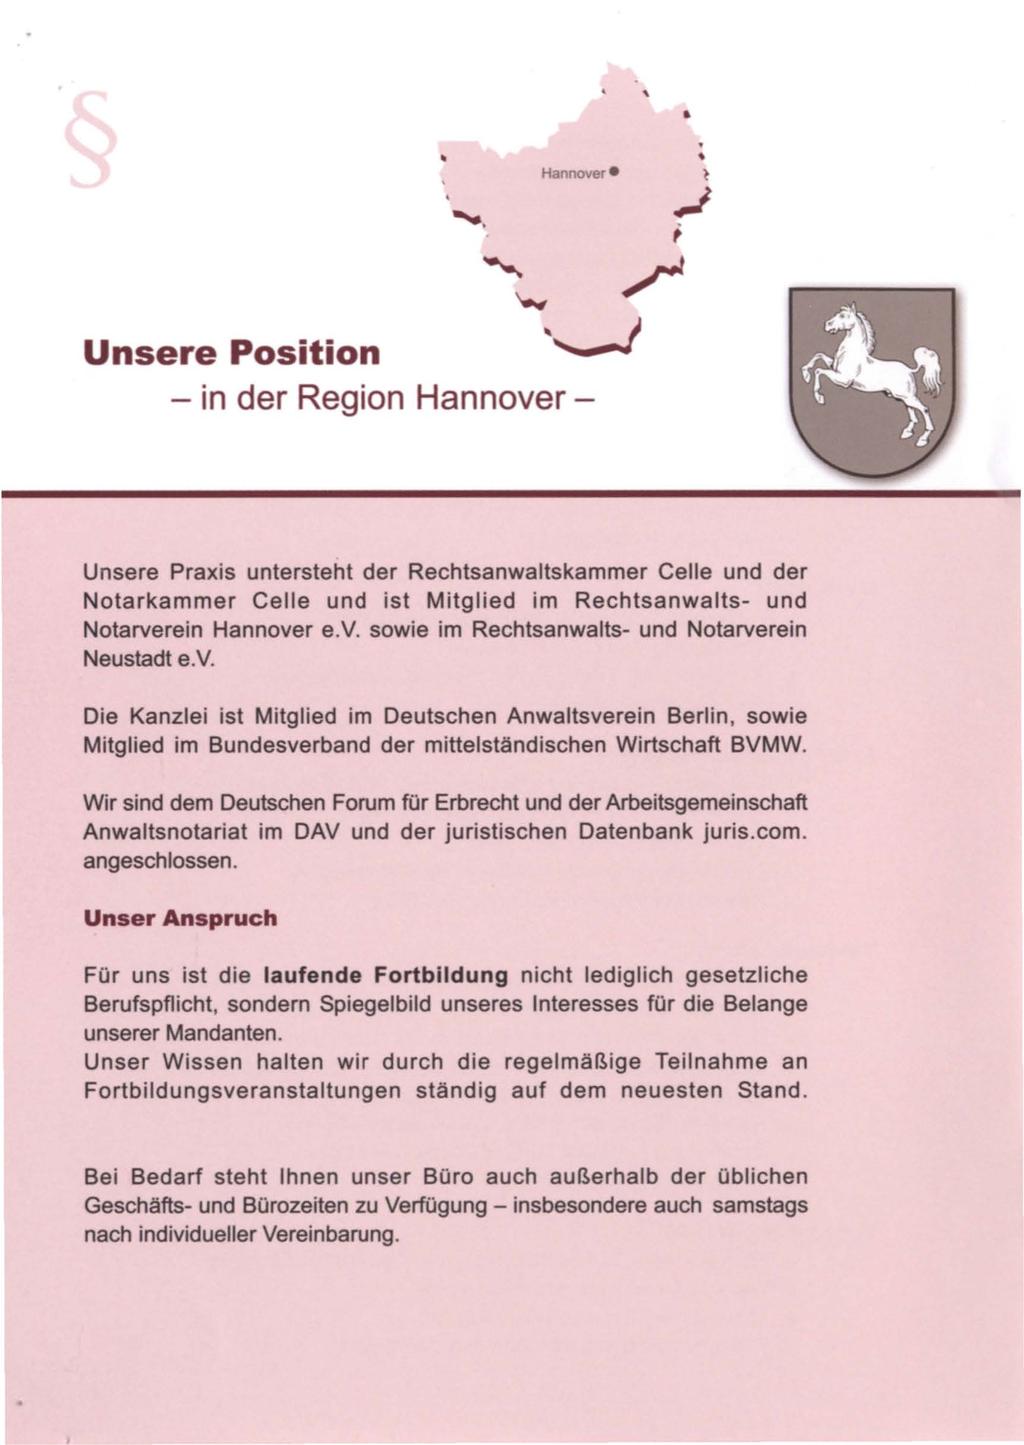 Unsere Position - in der Region Hannover- Unsere Praxis untersteht der Rechtsanwaltskammer Celle und der Notarkammer Celle und ist Mitglied im Rechtsanwalts- und Notarverein Hannover e.v. sowie im Rechtsanwalts- und Notarverein Neustadt e.